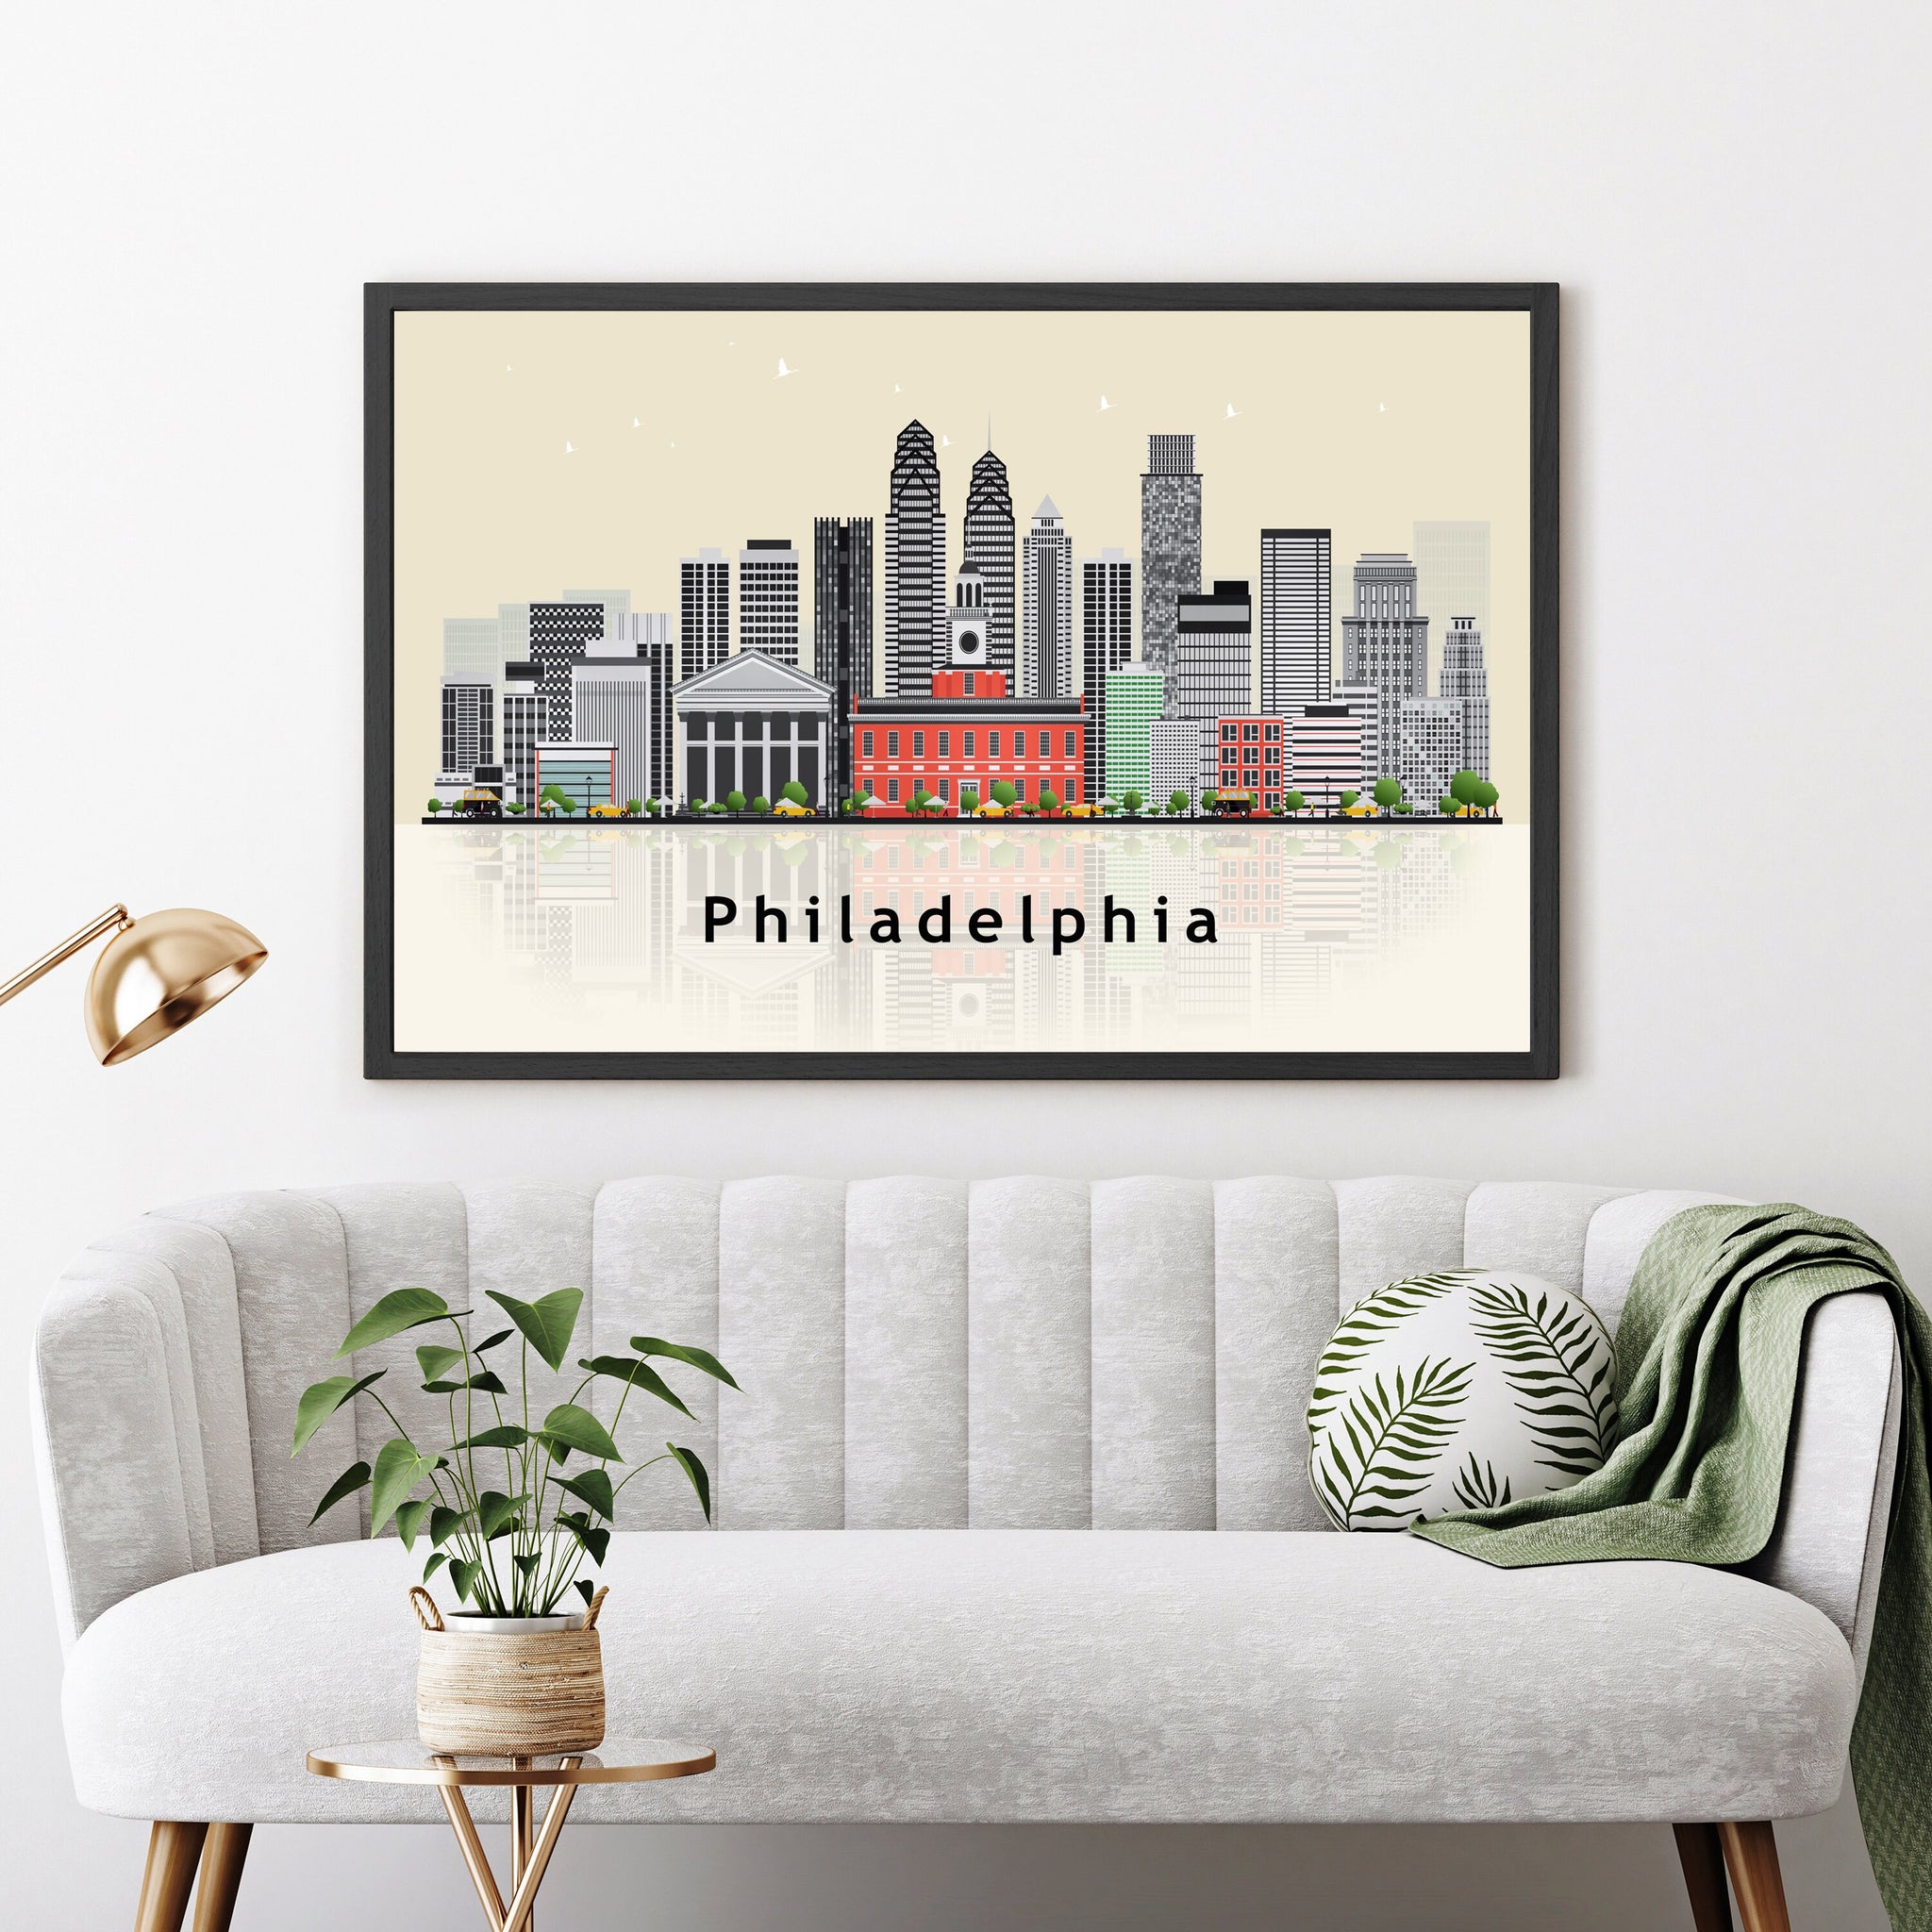 PHILADELPHIA Pennsylvania Illustration skyline poster, Pennsylvania modern skyline cityscape poster print, Landmark poster, Home wall art